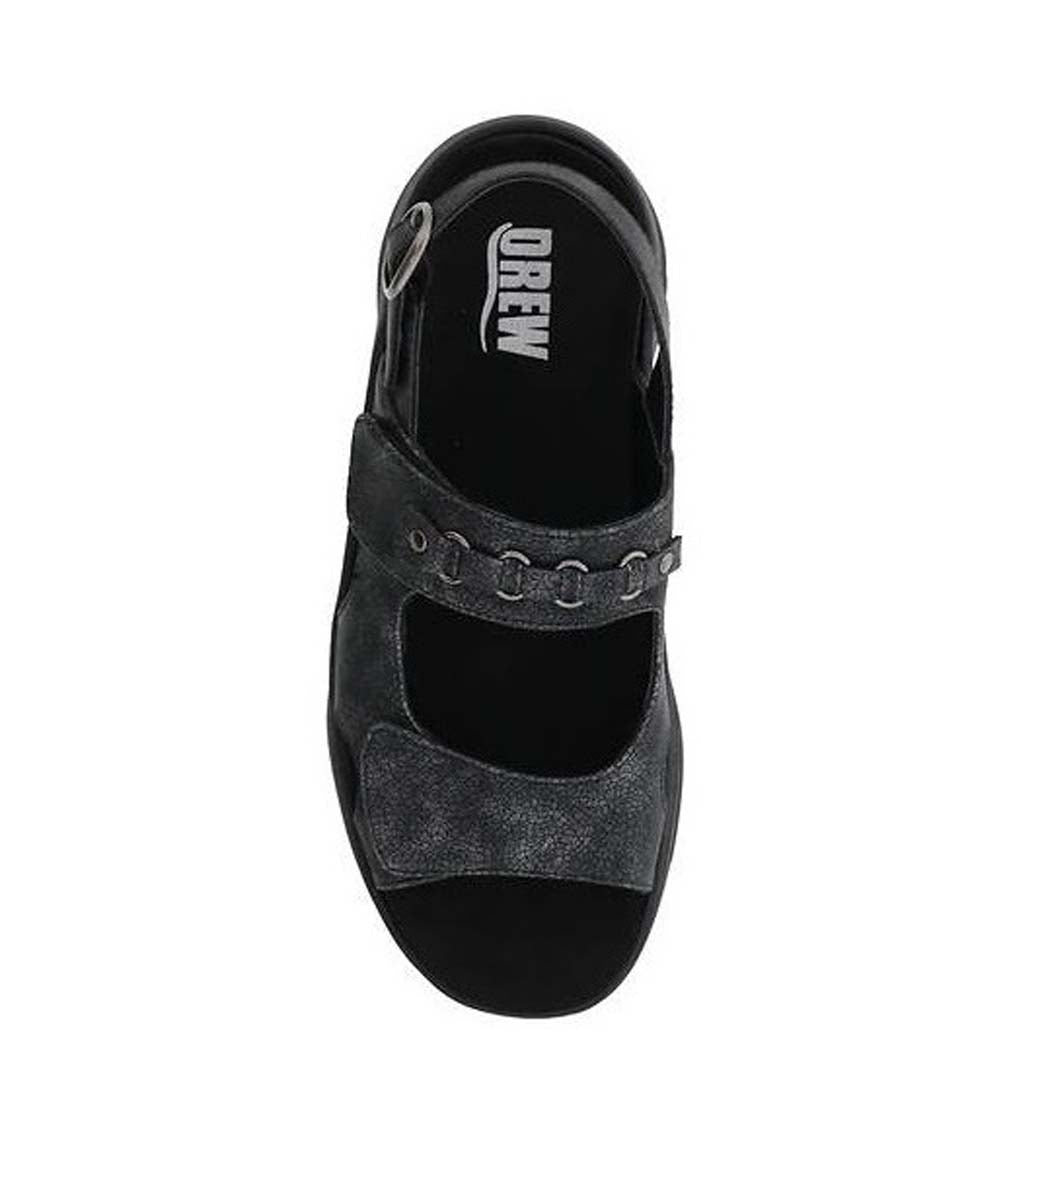 DREW SELINA WOMEN SANDAL IN BLACK - TLW Shoes